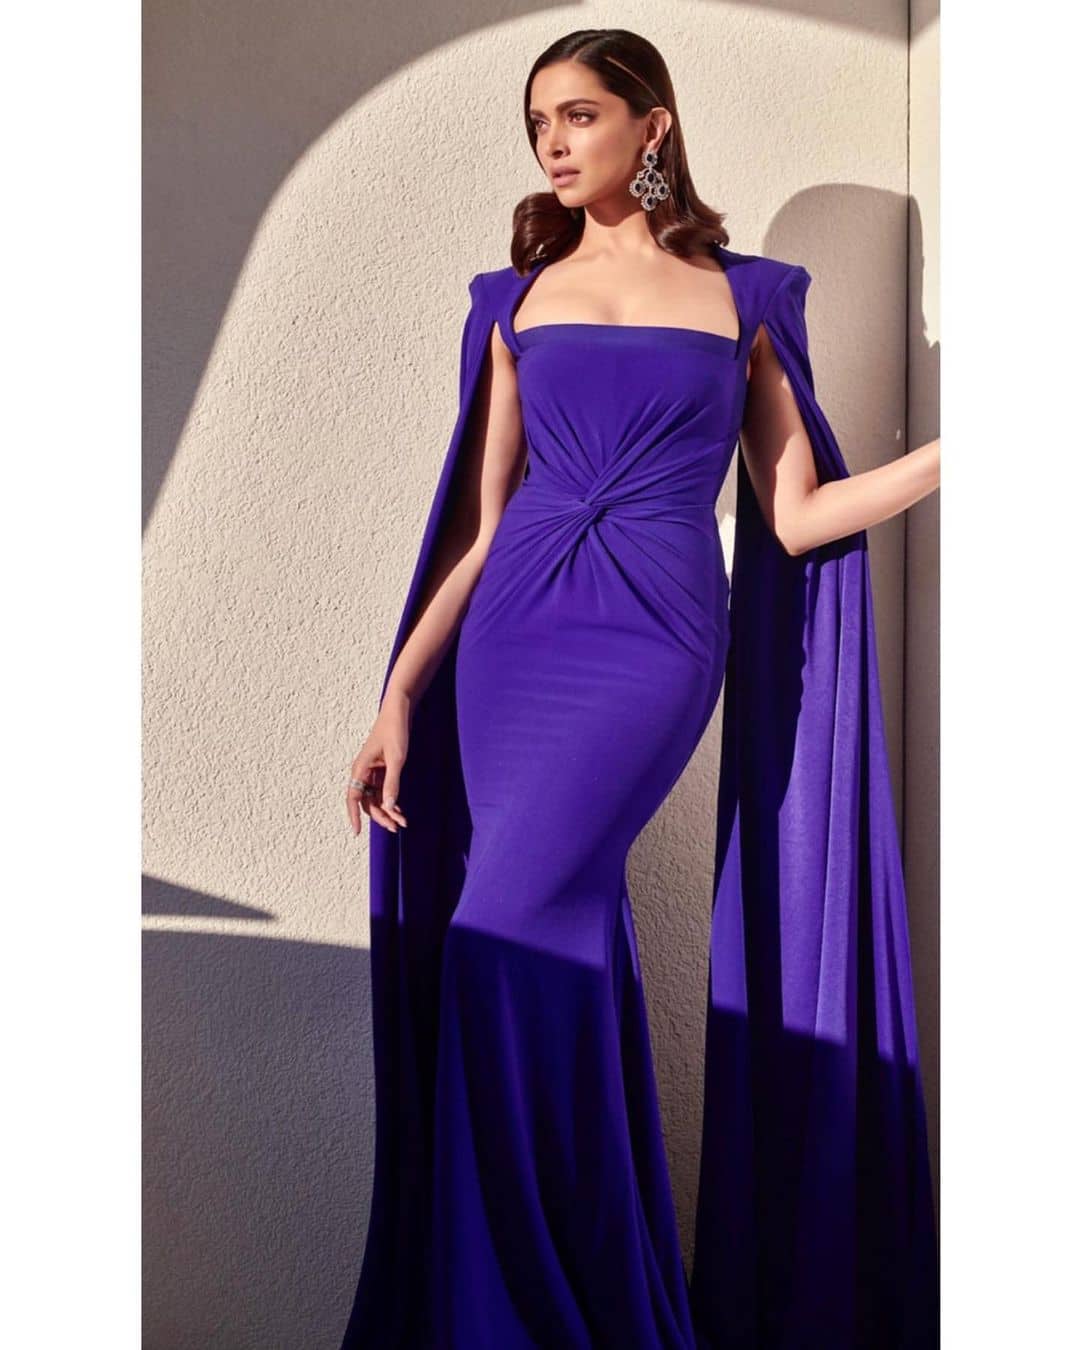 Deepika looks elegant in deep blue gown